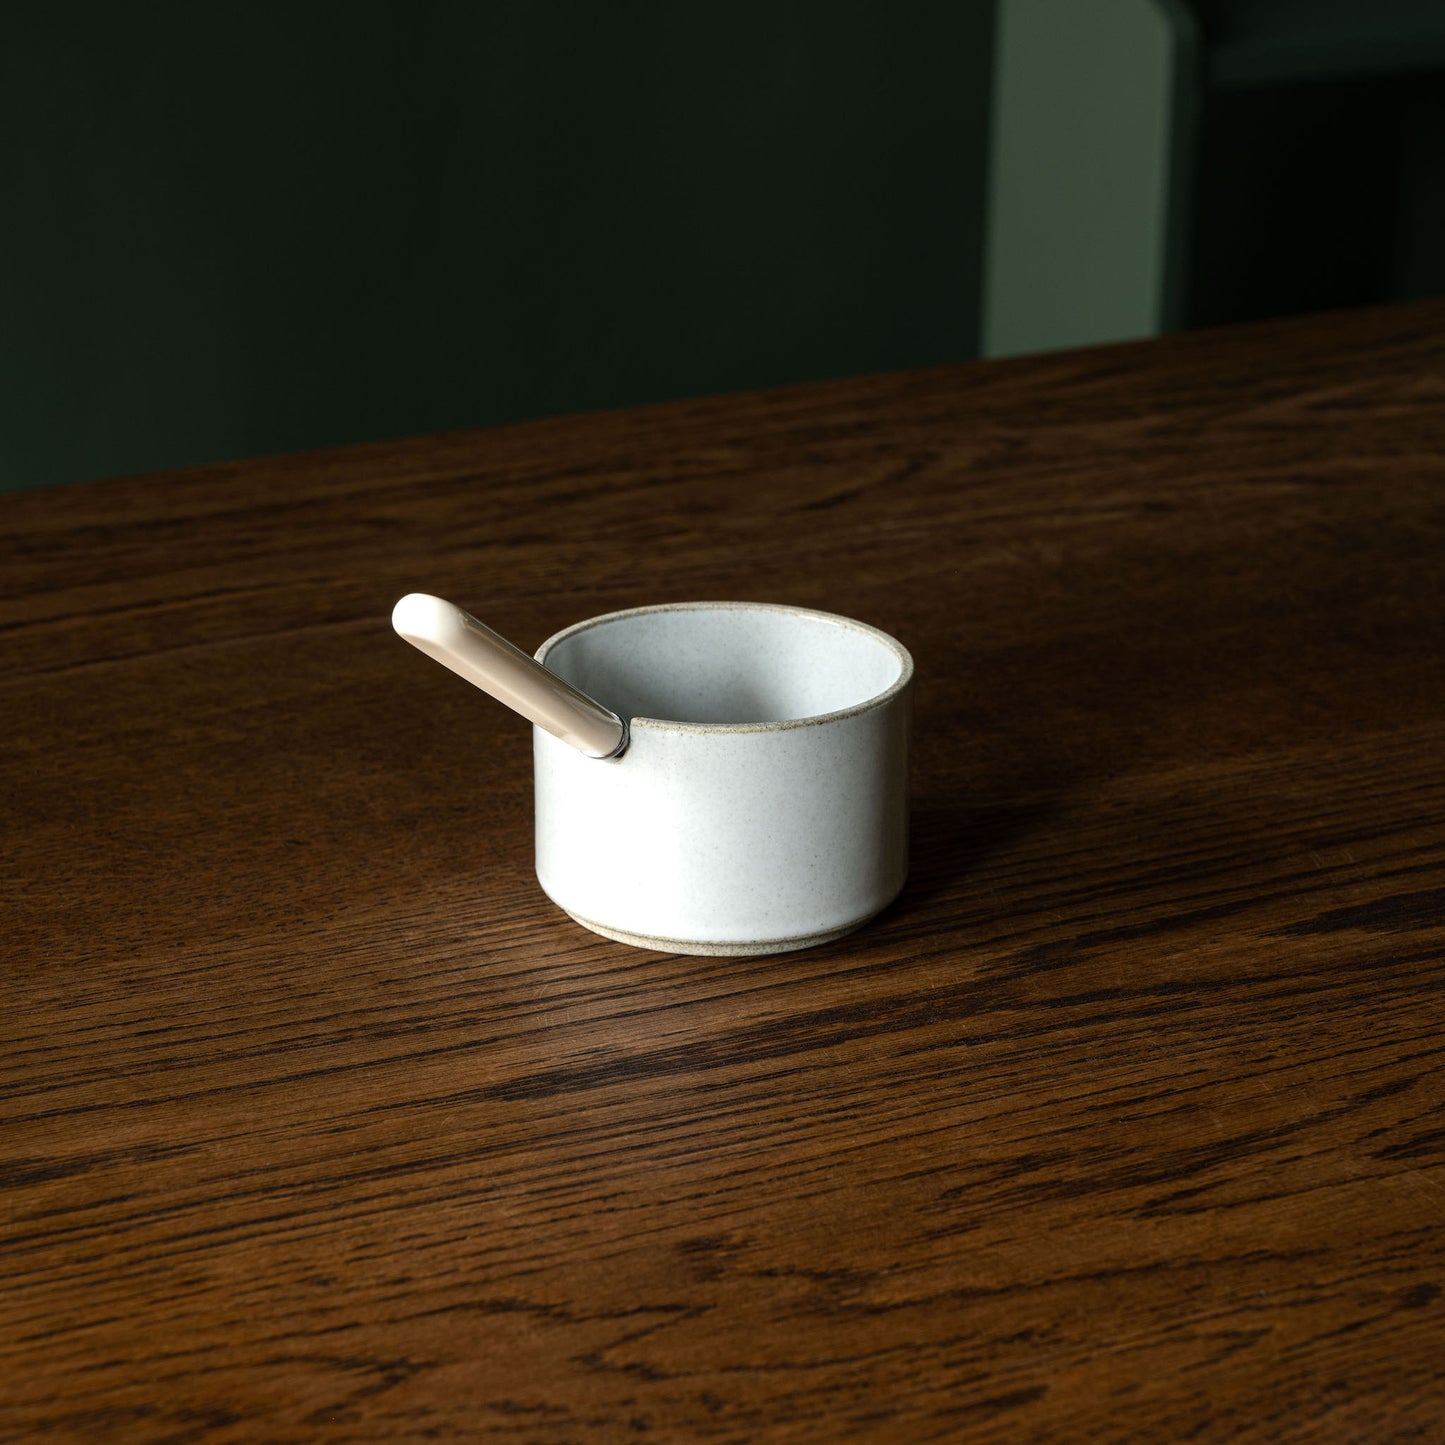 Hasami Porcelain gloss grey sugar bowl + spoon